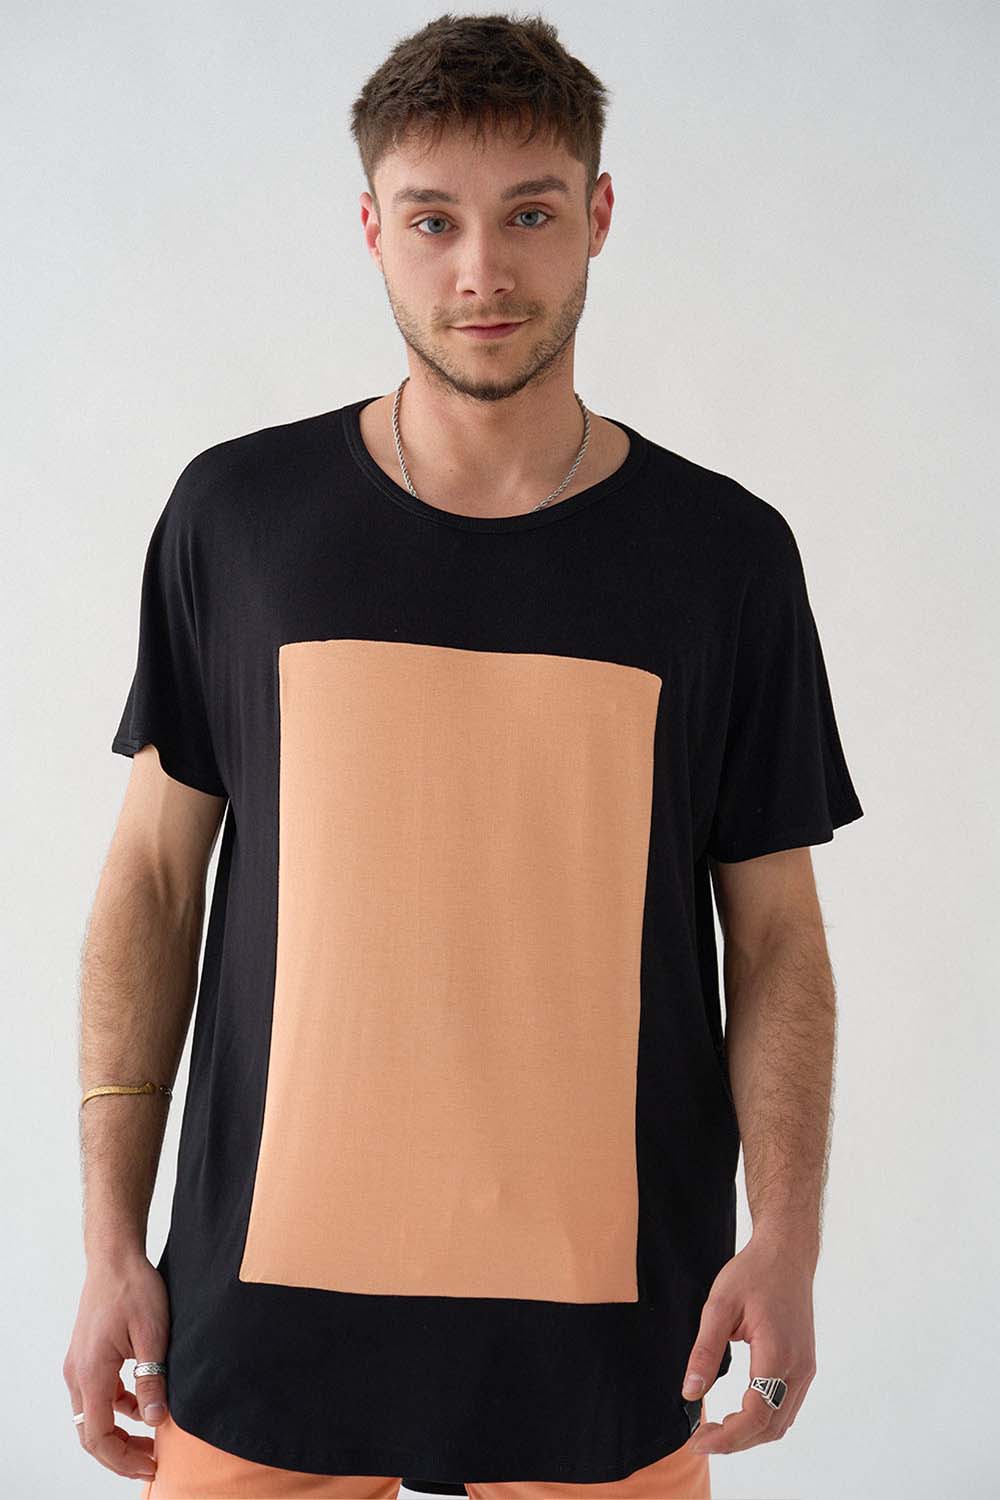 imagen detalle del modelo con camiseta quadrilaterus negro y salmón y shorts salmón